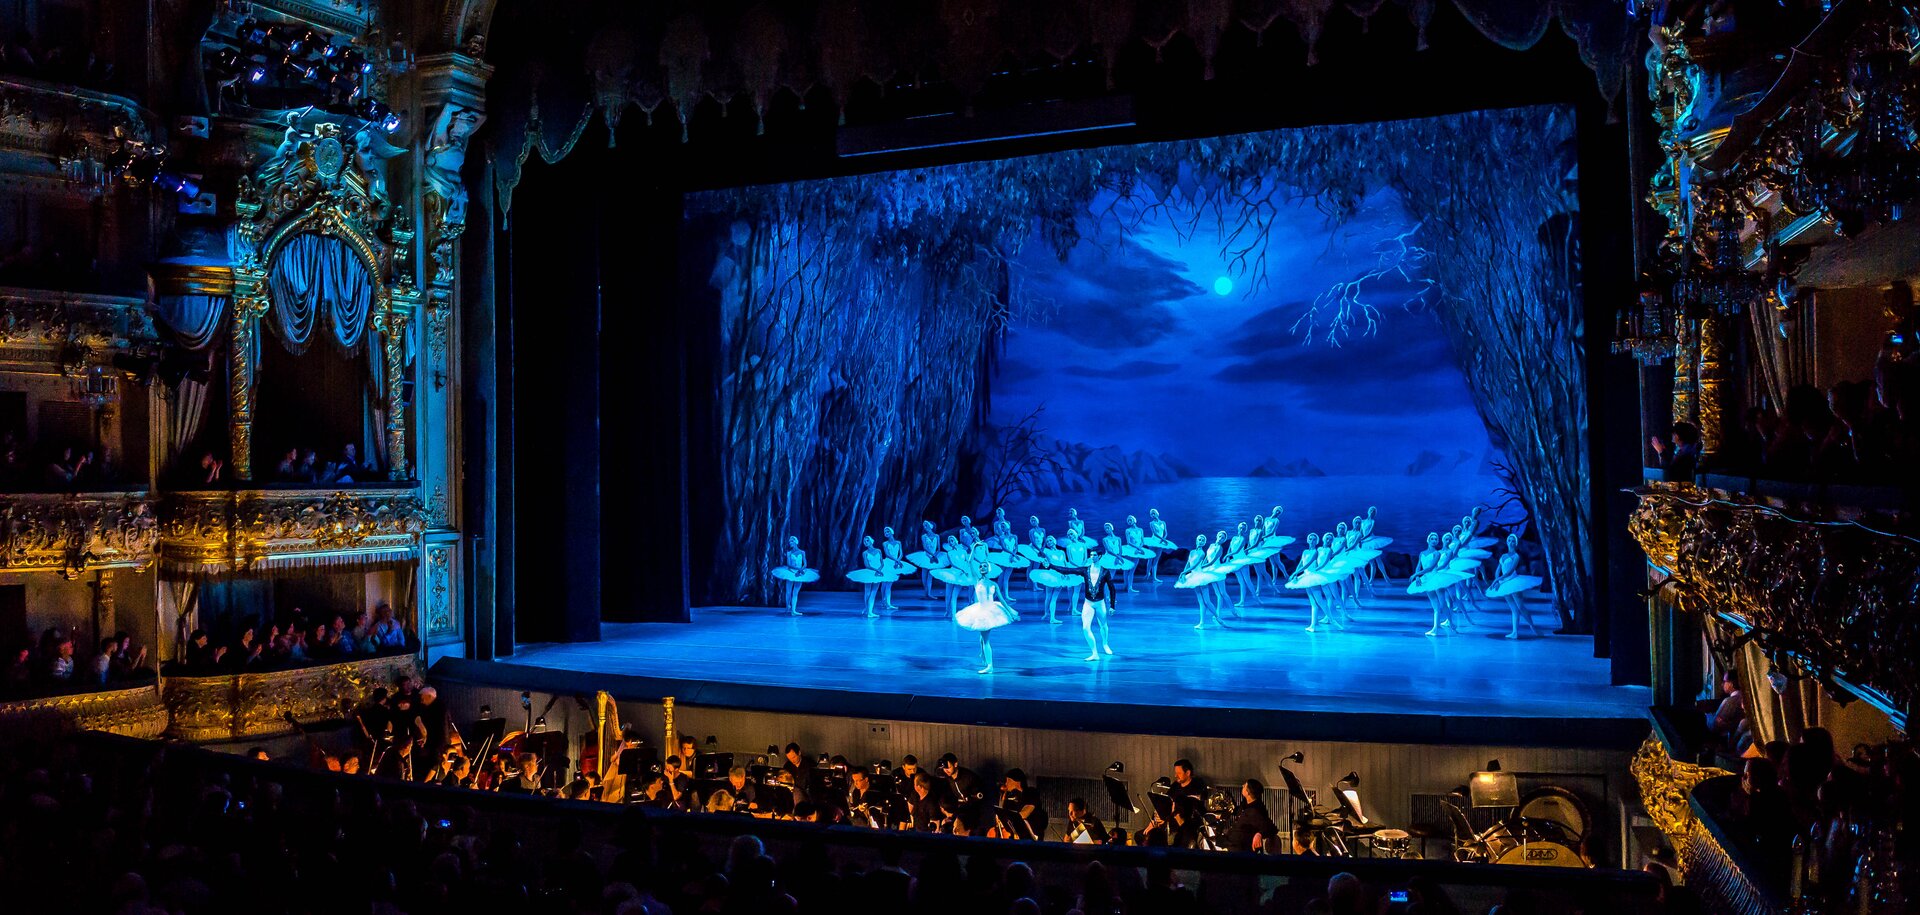 Zdjęcie ze spektaklu “Jezioro Łabędzie” w Teatrze Maryjskim, w Sankt Petersburgu w Rosji. Na scenie bajkowa scenografia. Wszystko jest w odcieniach koloru niebieskiego. Na niebie chmury i księżyc, po bokach gęste, wysokie drzewa. W centrum sceny para: tancerka i tancerz. Z tyłu duża grupa baletnic. Baletnice są ubrane na biało, mają sterczące spódniczki paczki i białe kostiumy. Przed sceną w kanale widać orkiestrę. Z boku sceny widać bogato zdobione loże.